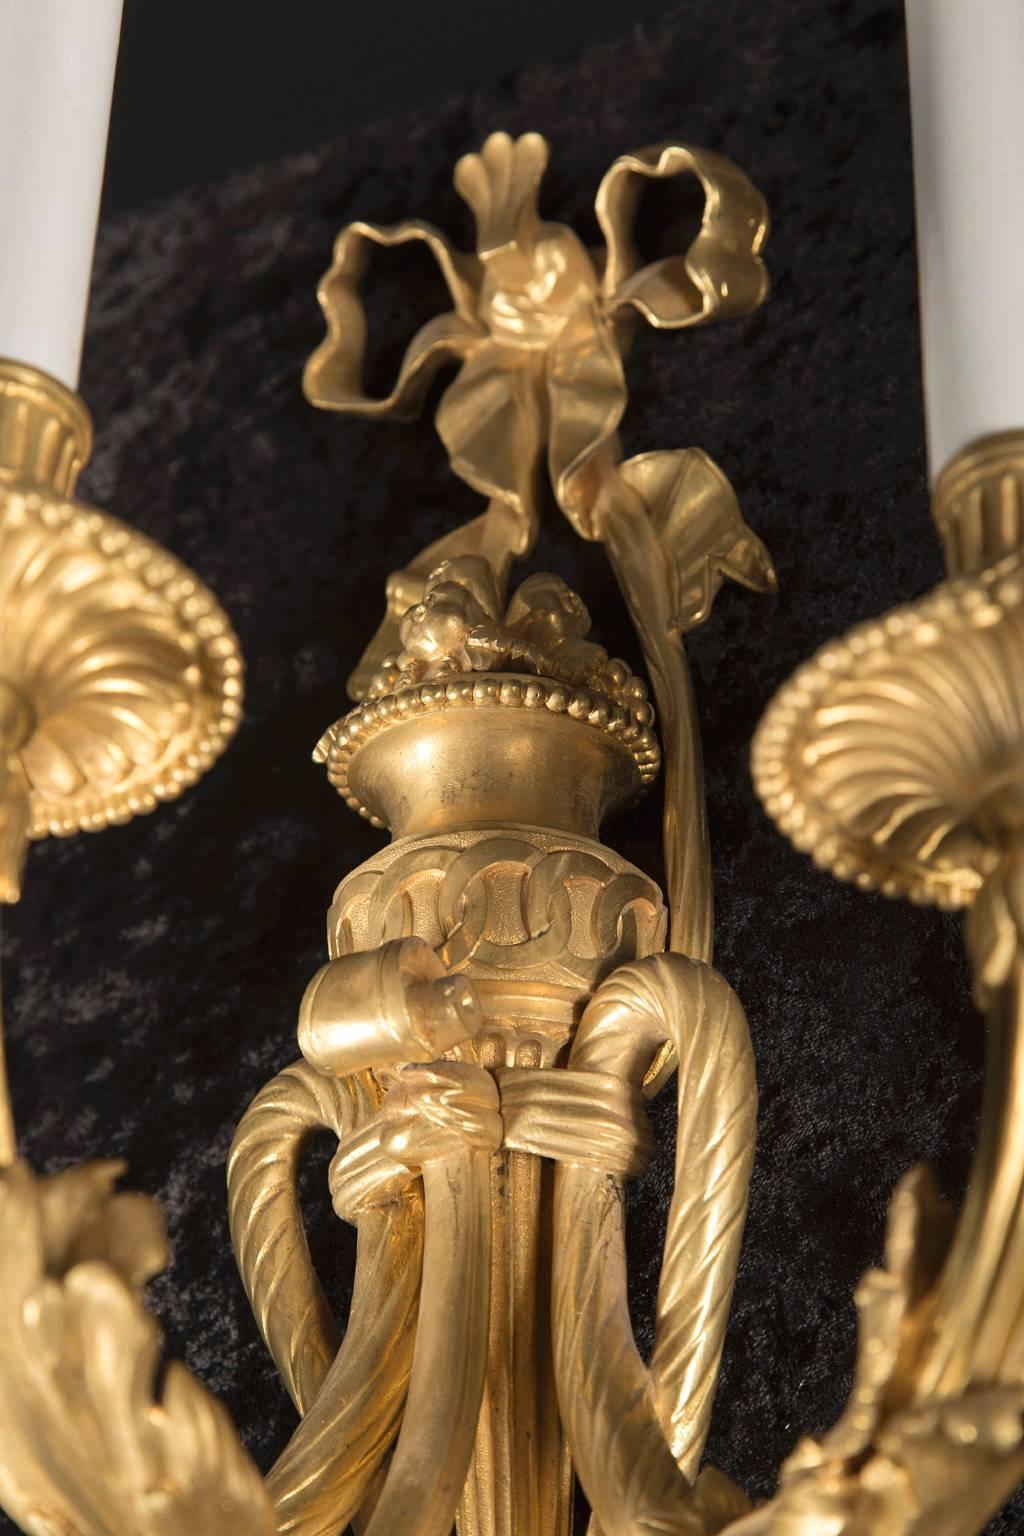 Cette magnifique paire d'appliques Louis XVI du XIXe siècle est faite de bronze d'or fin finement ciselé. Les détails ne manquent pas sur cette paire. Notez le nœud classique Louis XVI au sommet, les trois branches attachées au centre par un motif